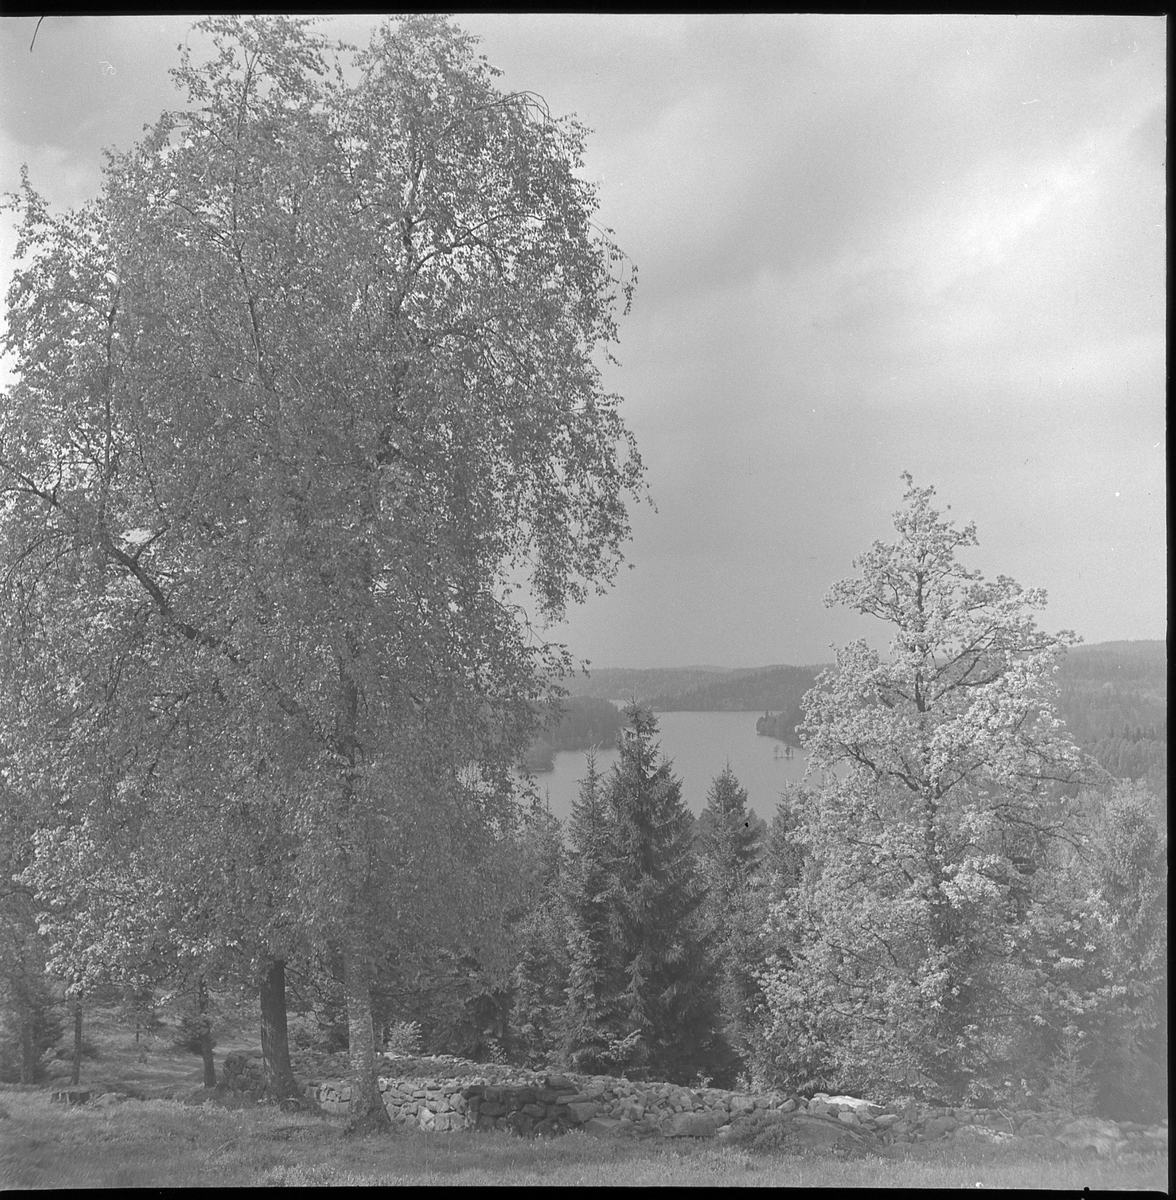 Vy från Ödenäs ned mot sjön Ömmern. 21 maj 1950